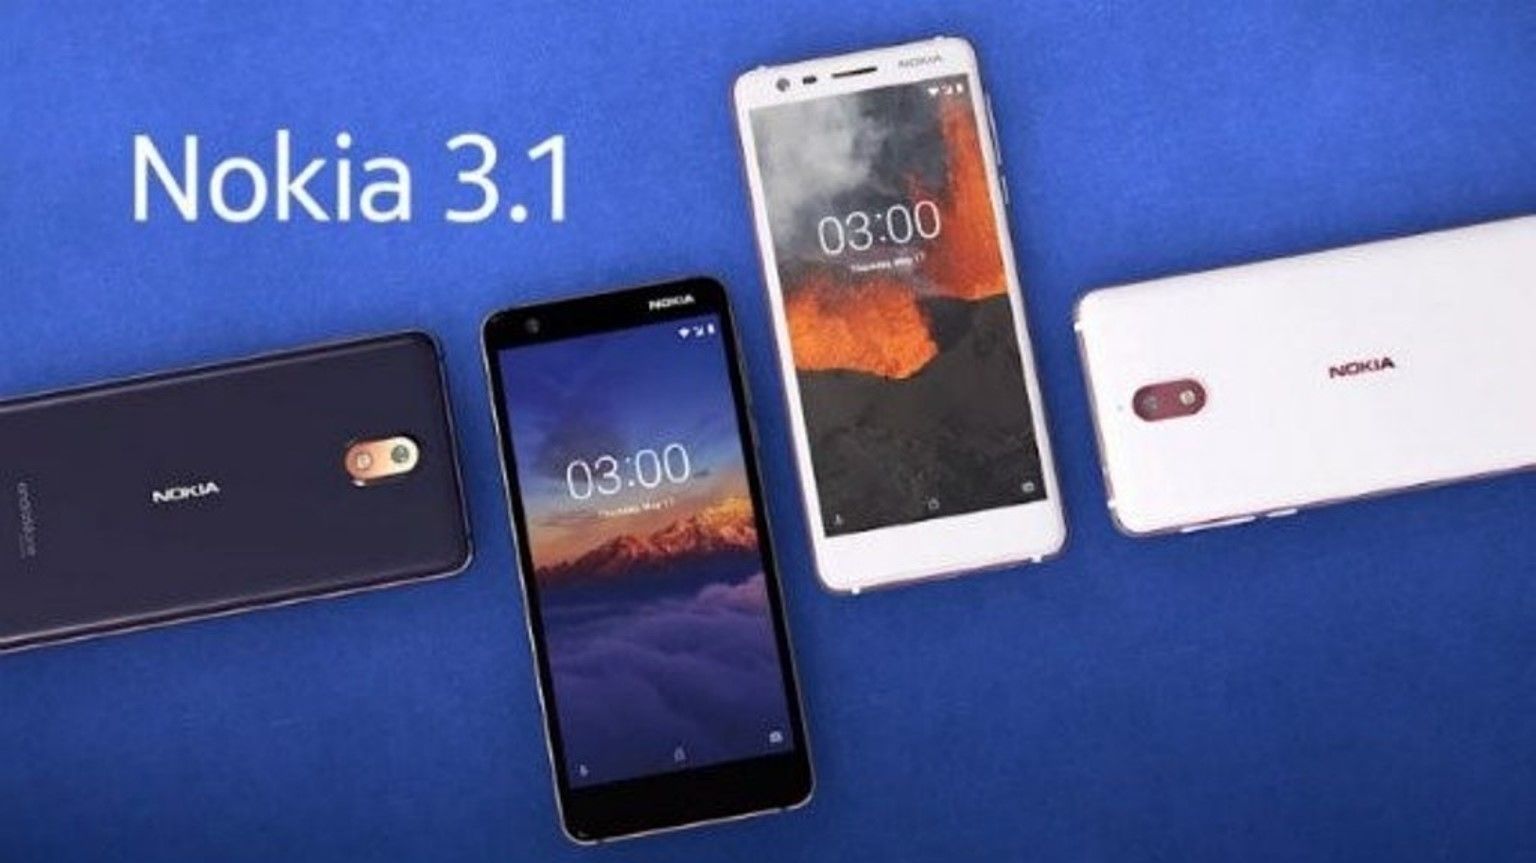 Smartphone Nokia 3.1 Plus - advantages and disadvantages